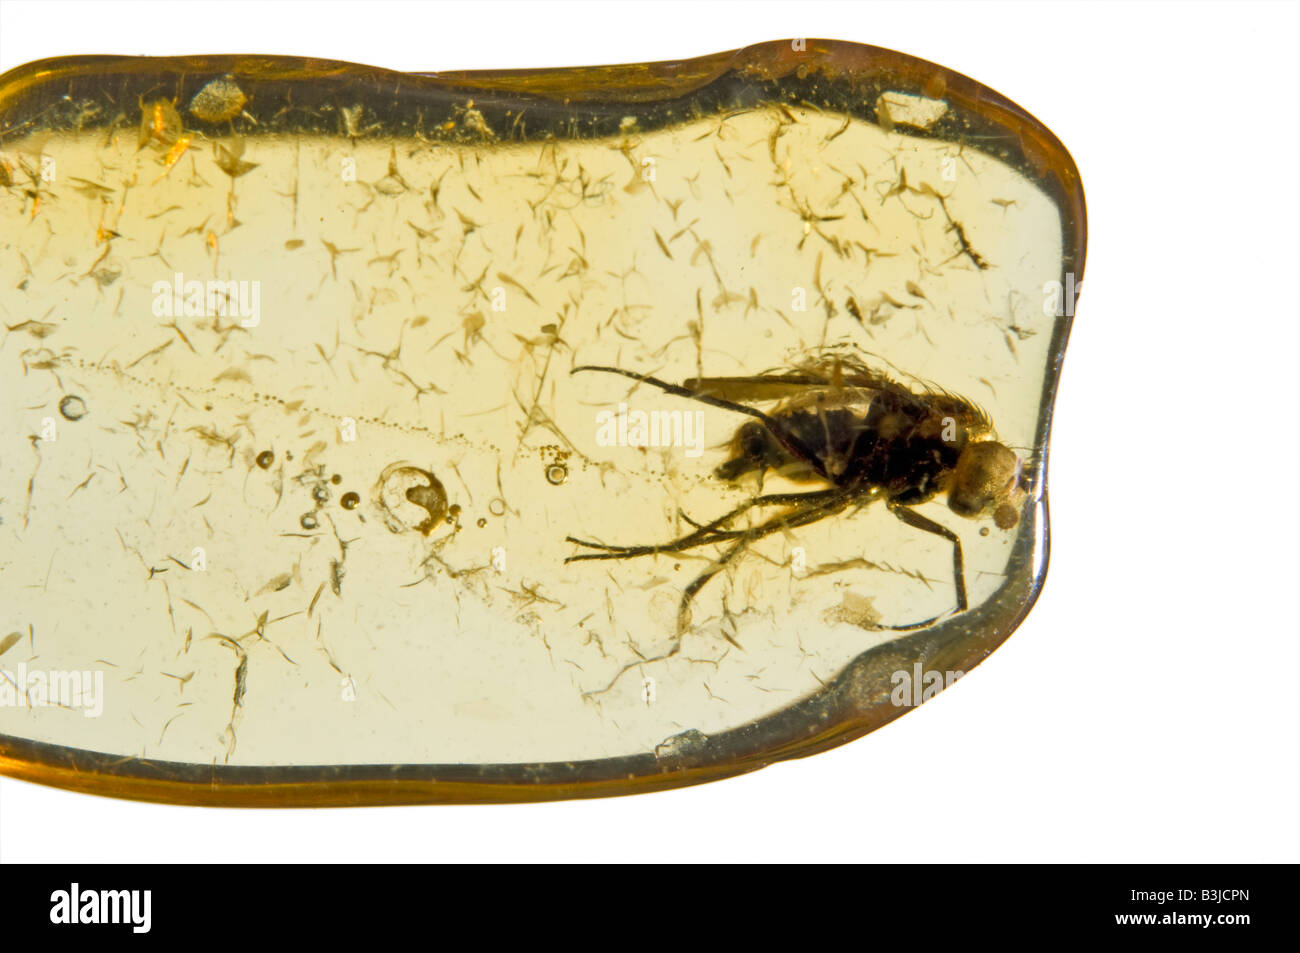 Fly préhistoriques conservés dans l'ambre baltique lituanienne Banque D'Images